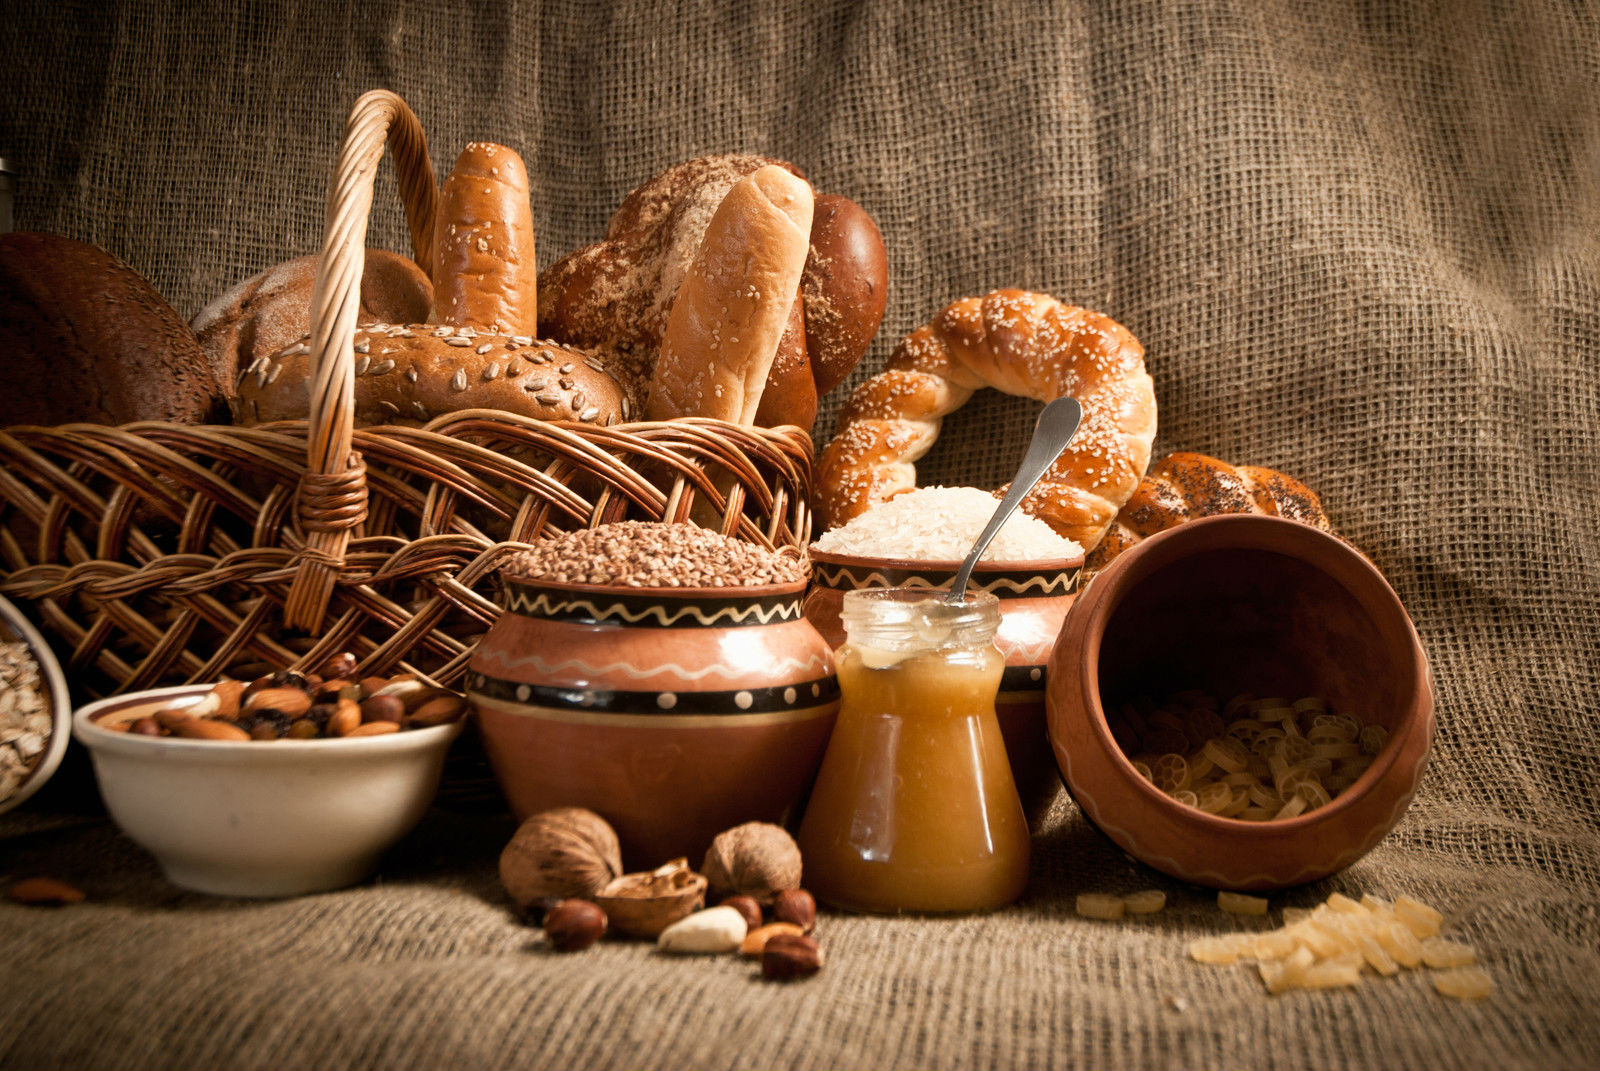 Pan sin gluten: 3 recetas fáciles y saludables